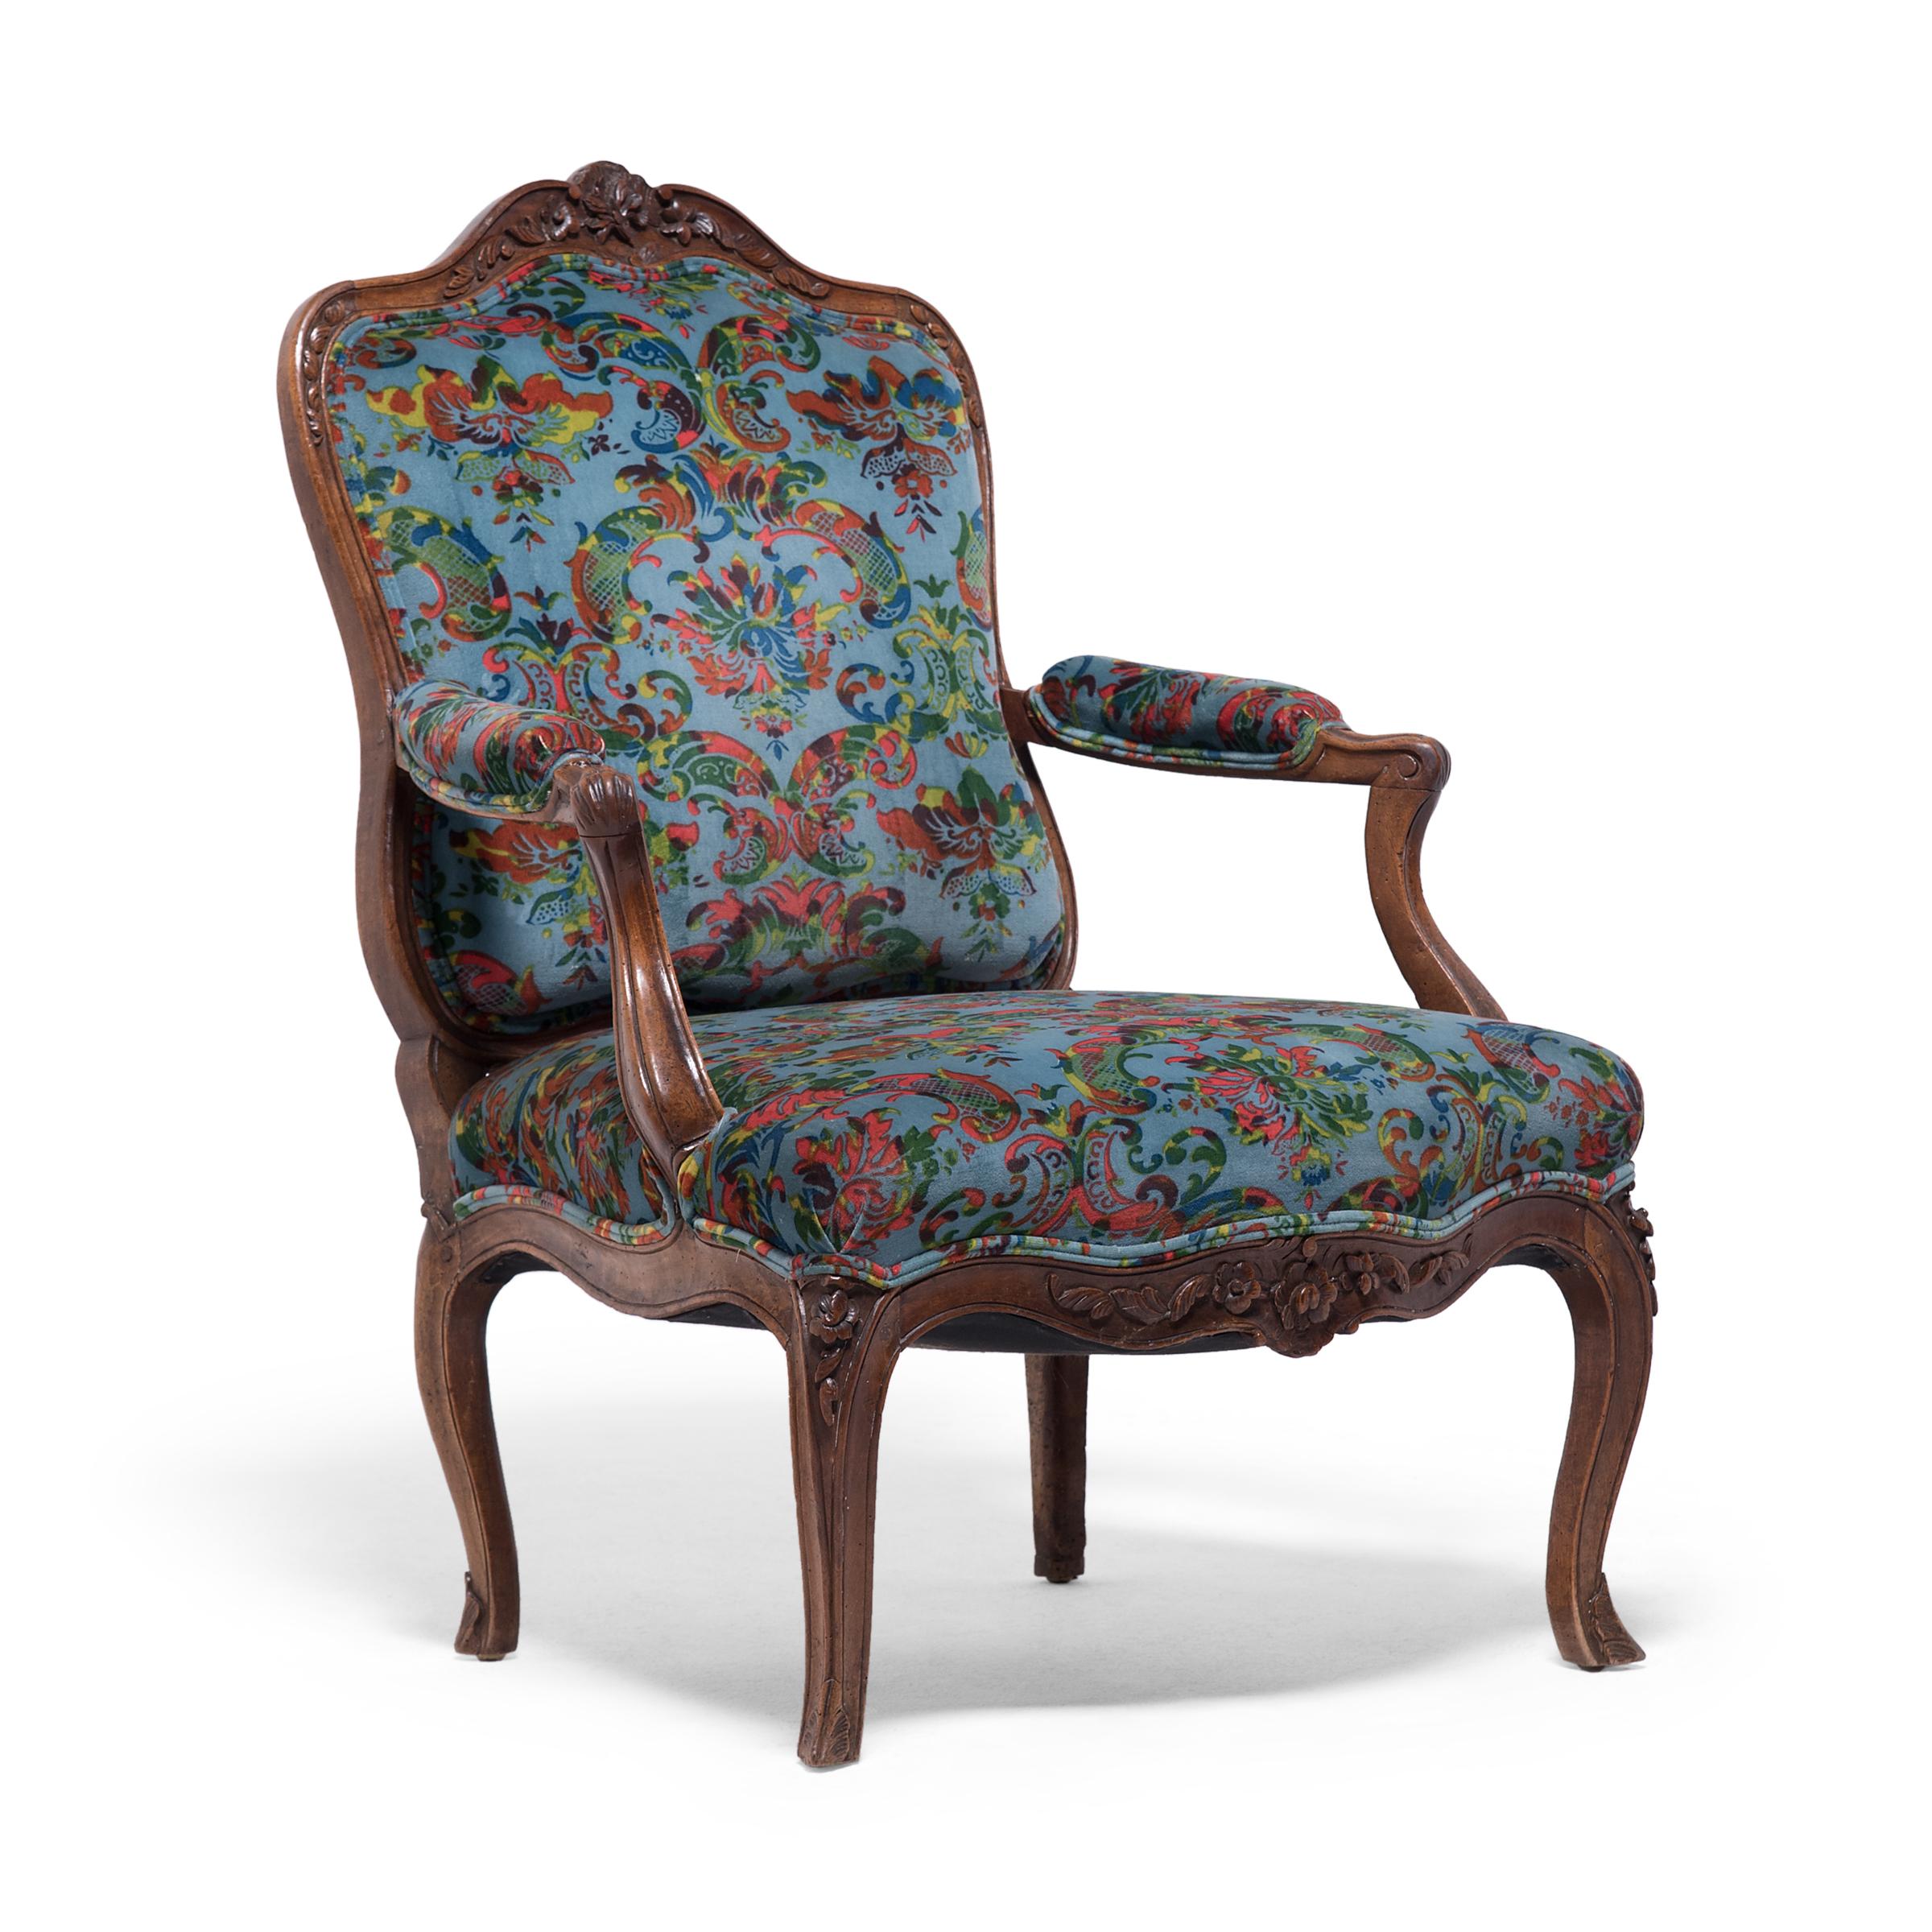 Ce fauteuil rembourré français du XIXe siècle incarne à merveille le style Louis XV, avec une riche ornementation et aucune ligne droite en vue. La chaise a un cadre sinueux en bois avec une large assise, un dossier plat et des accoudoirs ouverts et